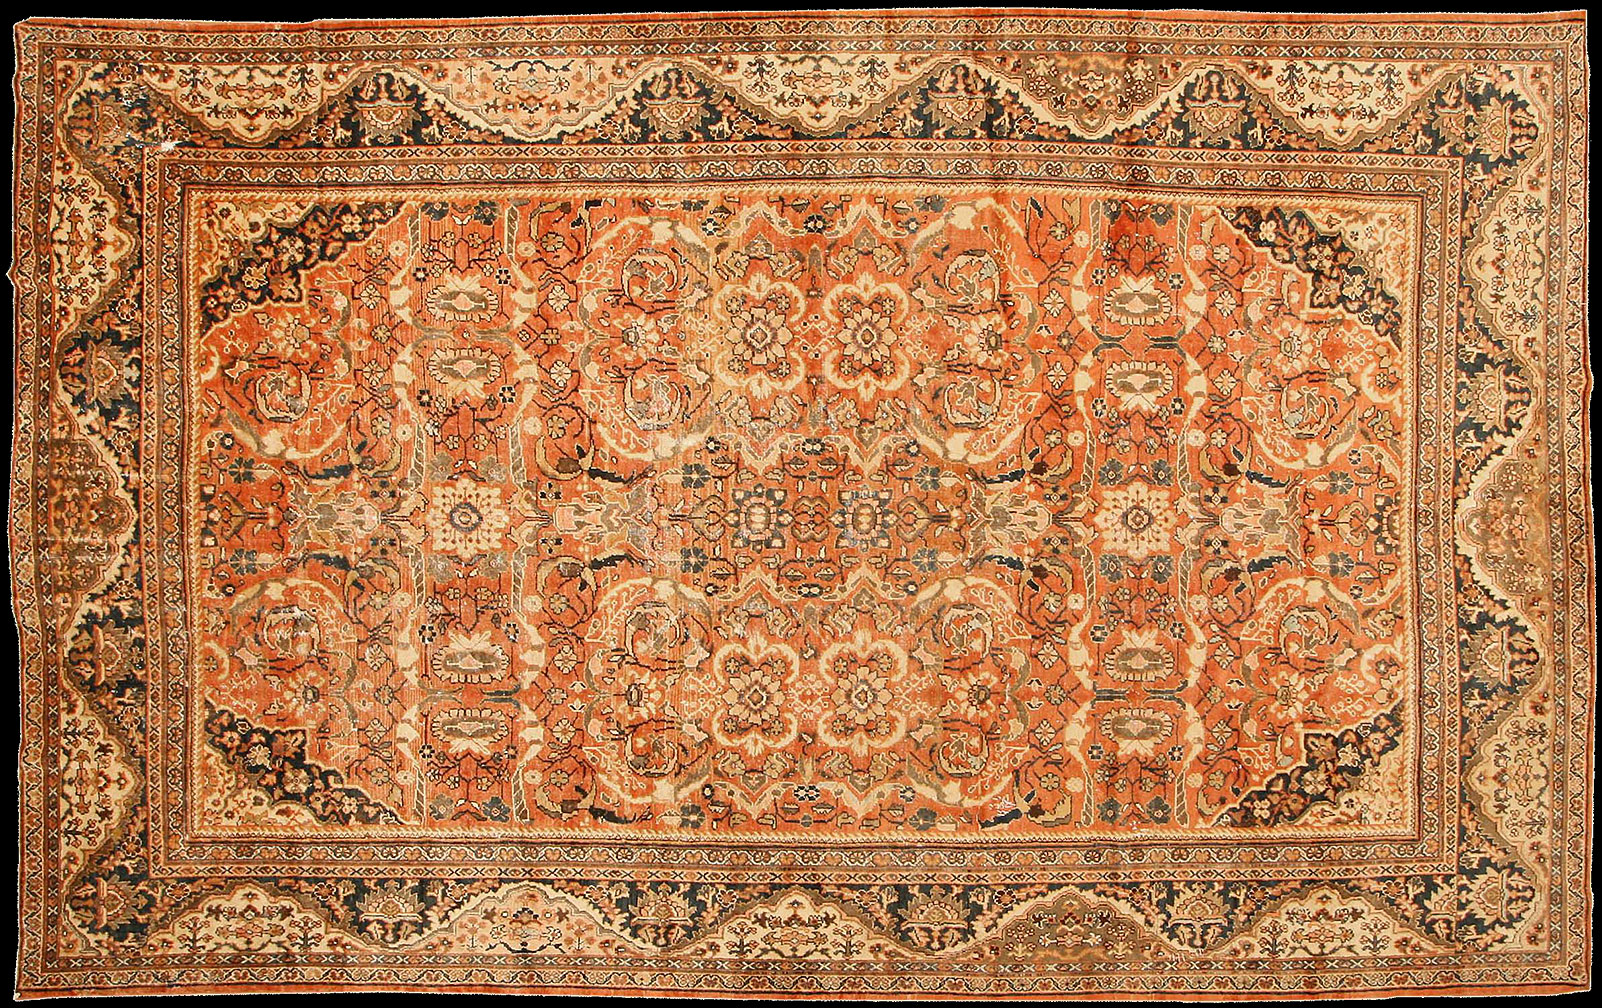 Antique mahal Carpet - # 52470